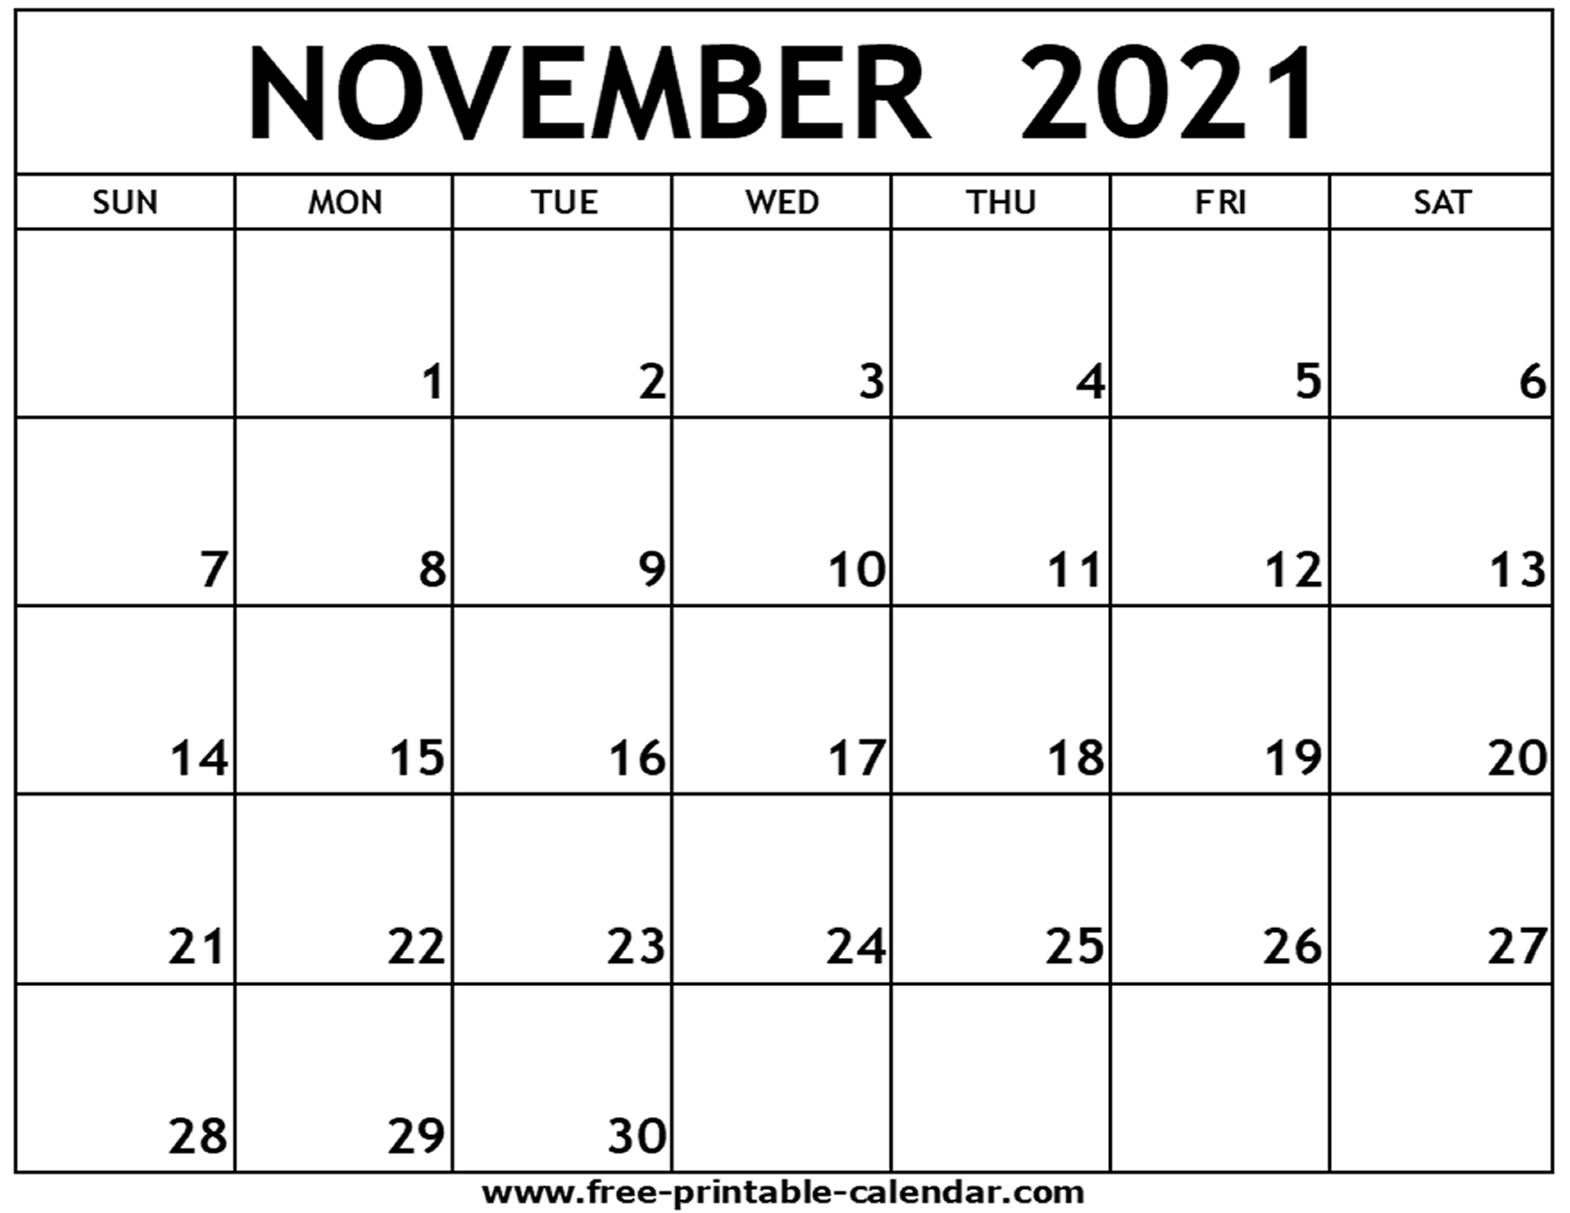 2021 November Calendar Free Printable | Example Calendar 1 November 2021 In Islamic Calendar